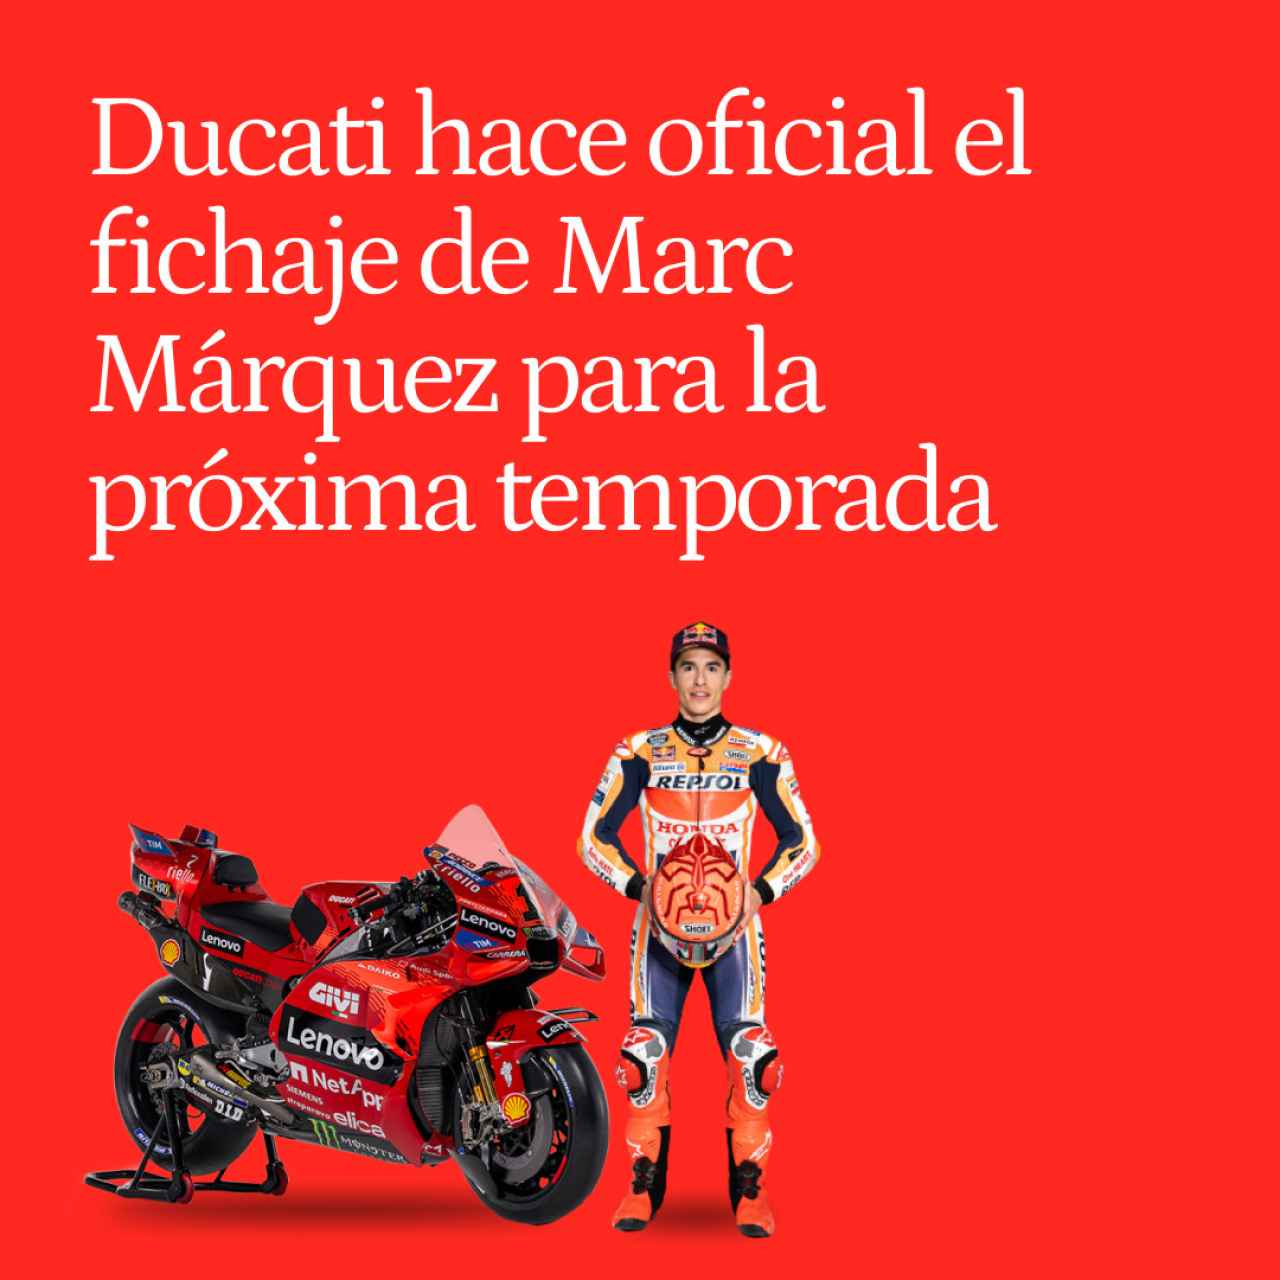 Ducati da la campanada final y hace oficial el fichaje de Marc Márquez para el próximo año